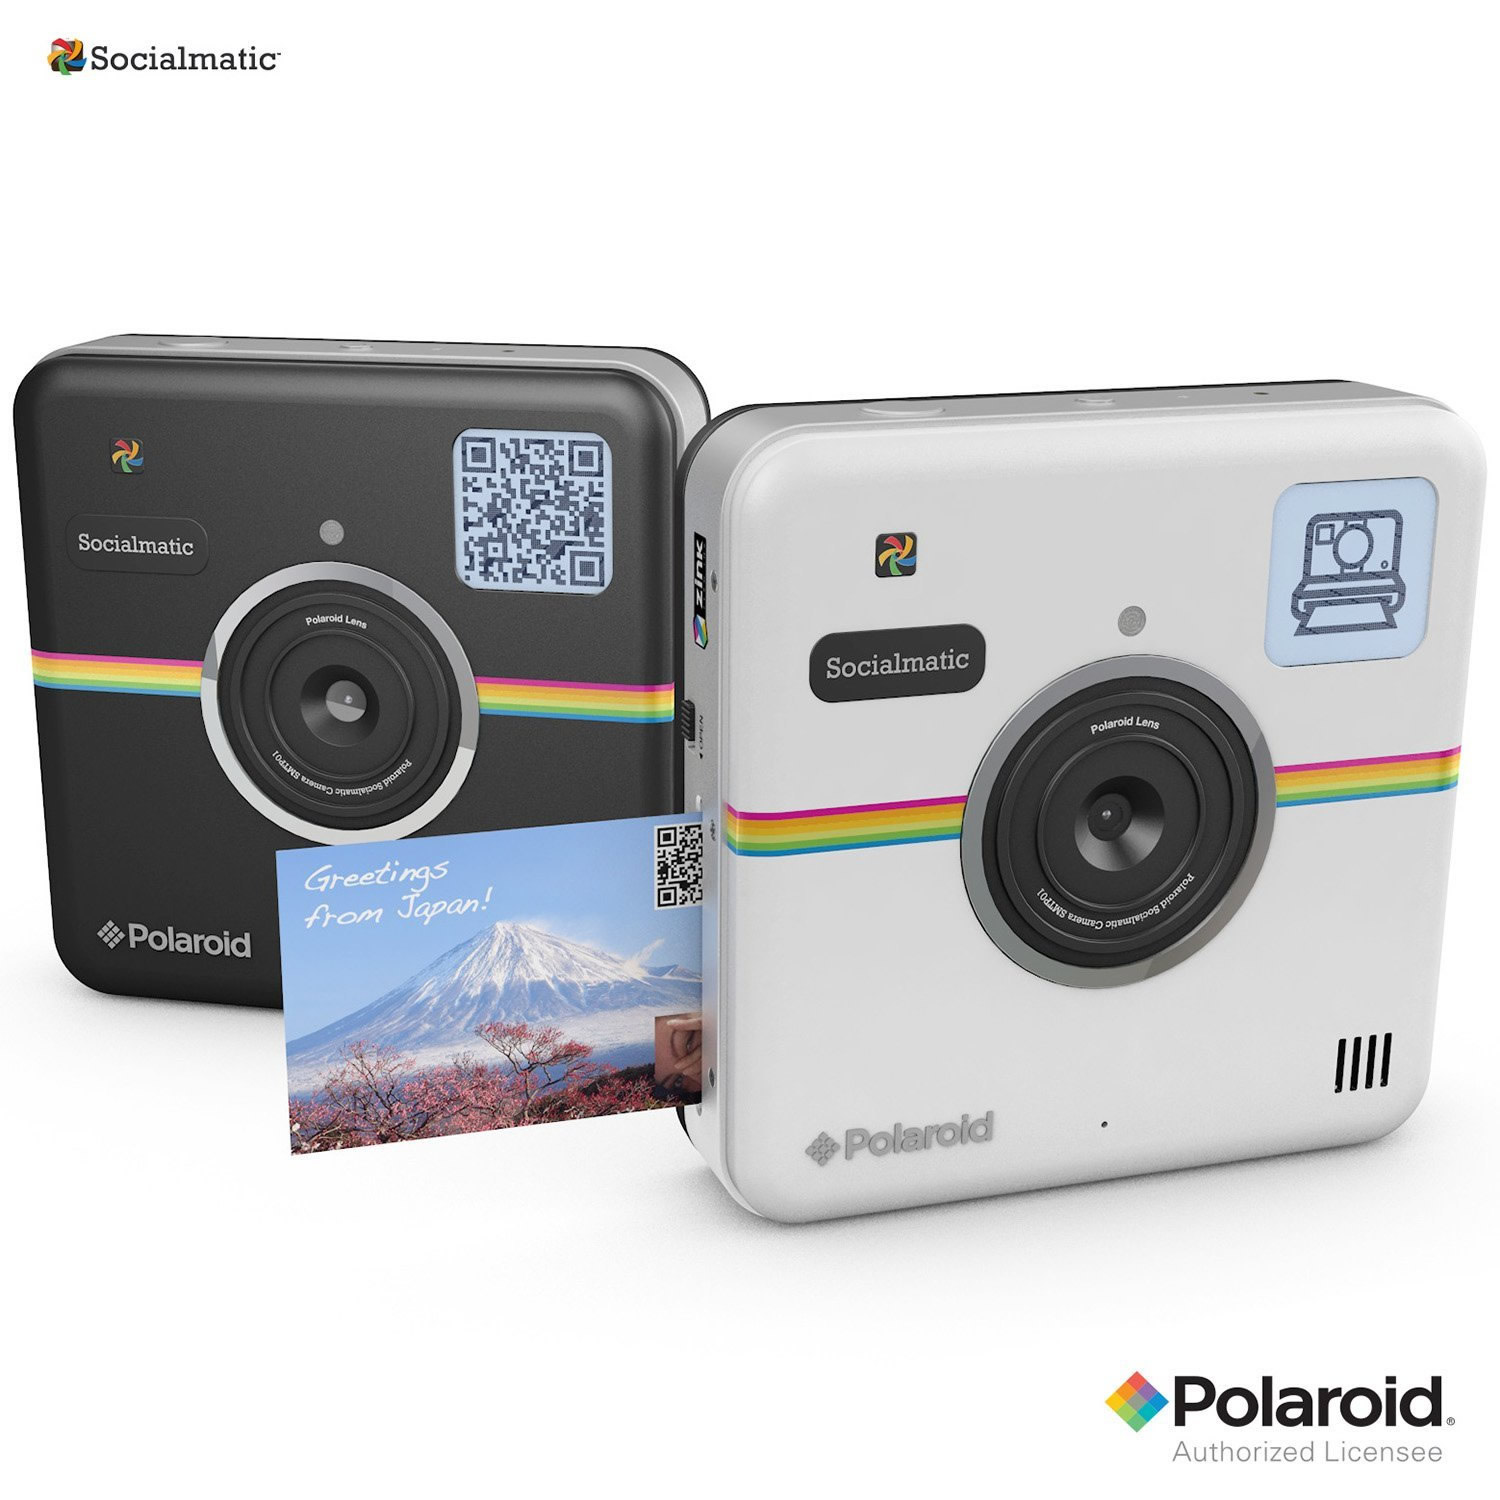 米Polaroid、Instagramのアイコン風カメラ『Socialmatic』を1月15日に発売へ